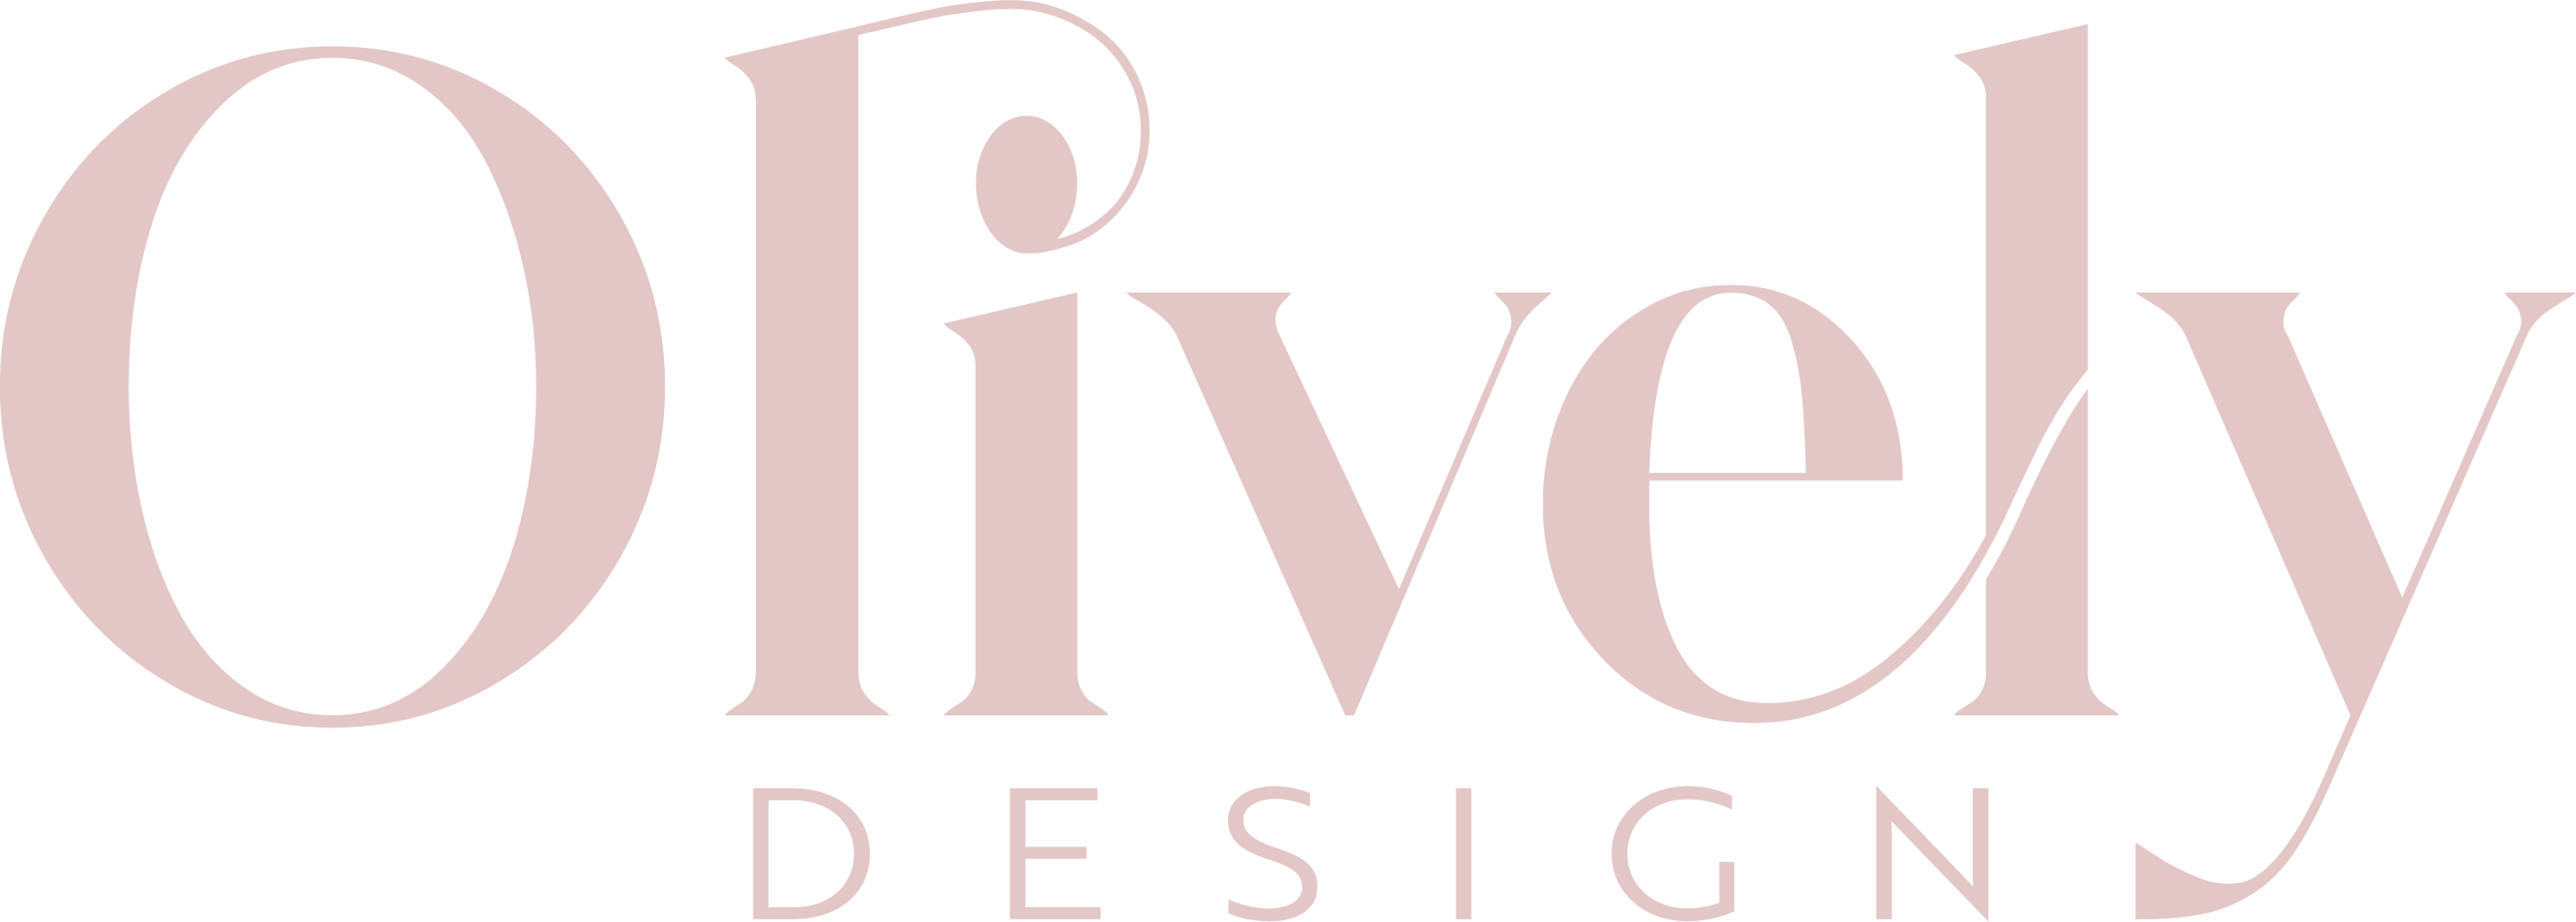 Olively Design